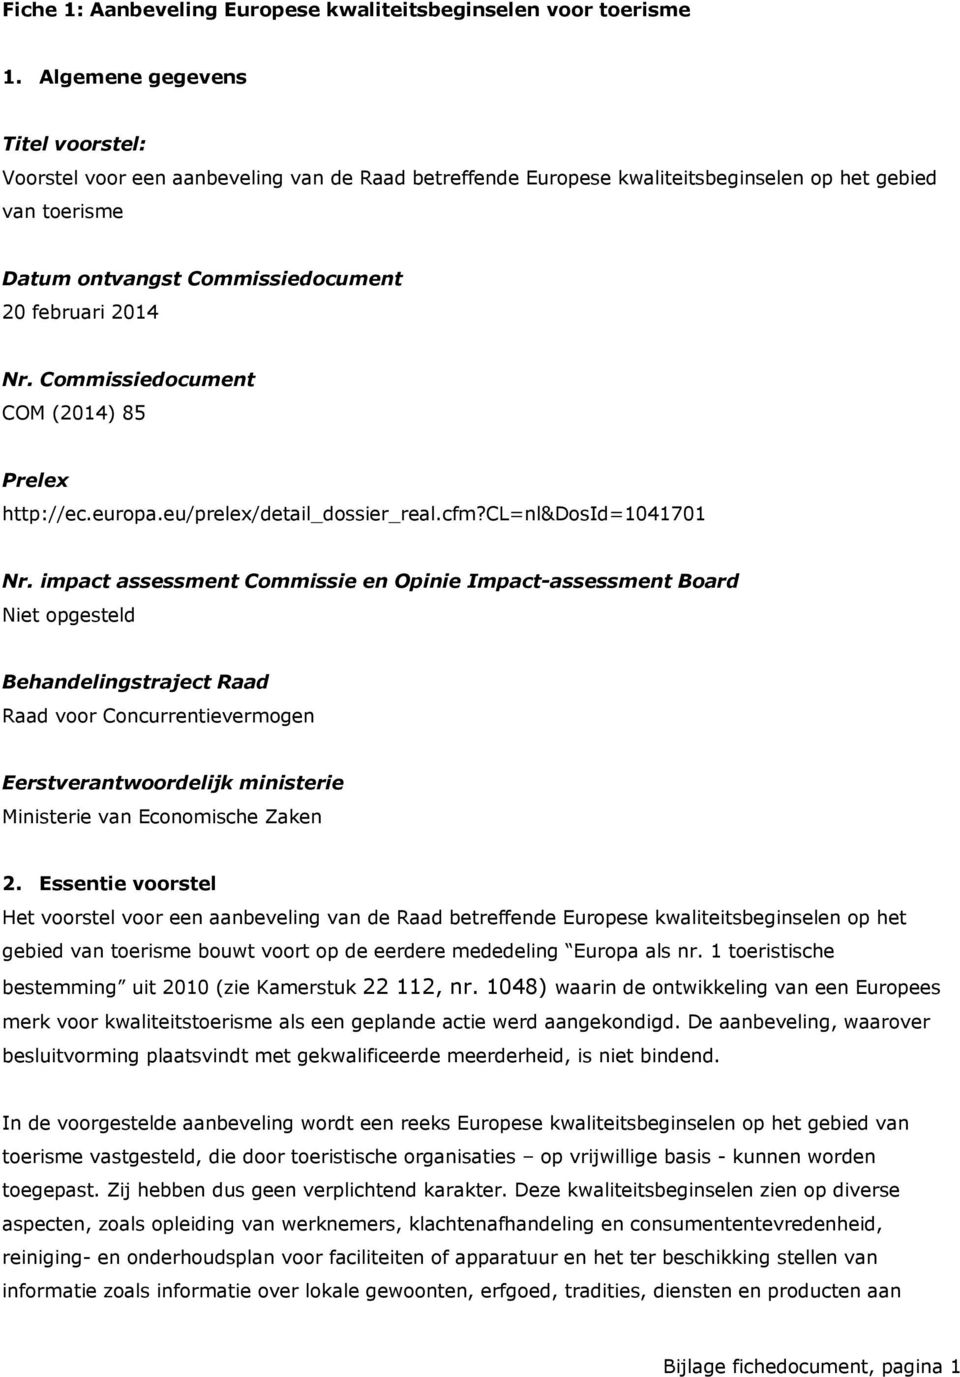 Commissiedocument COM (2014) 85 Prelex http://ec.europa.eu/prelex/detail_dossier_real.cfm?cl=nl&dosid=1041701 Nr.